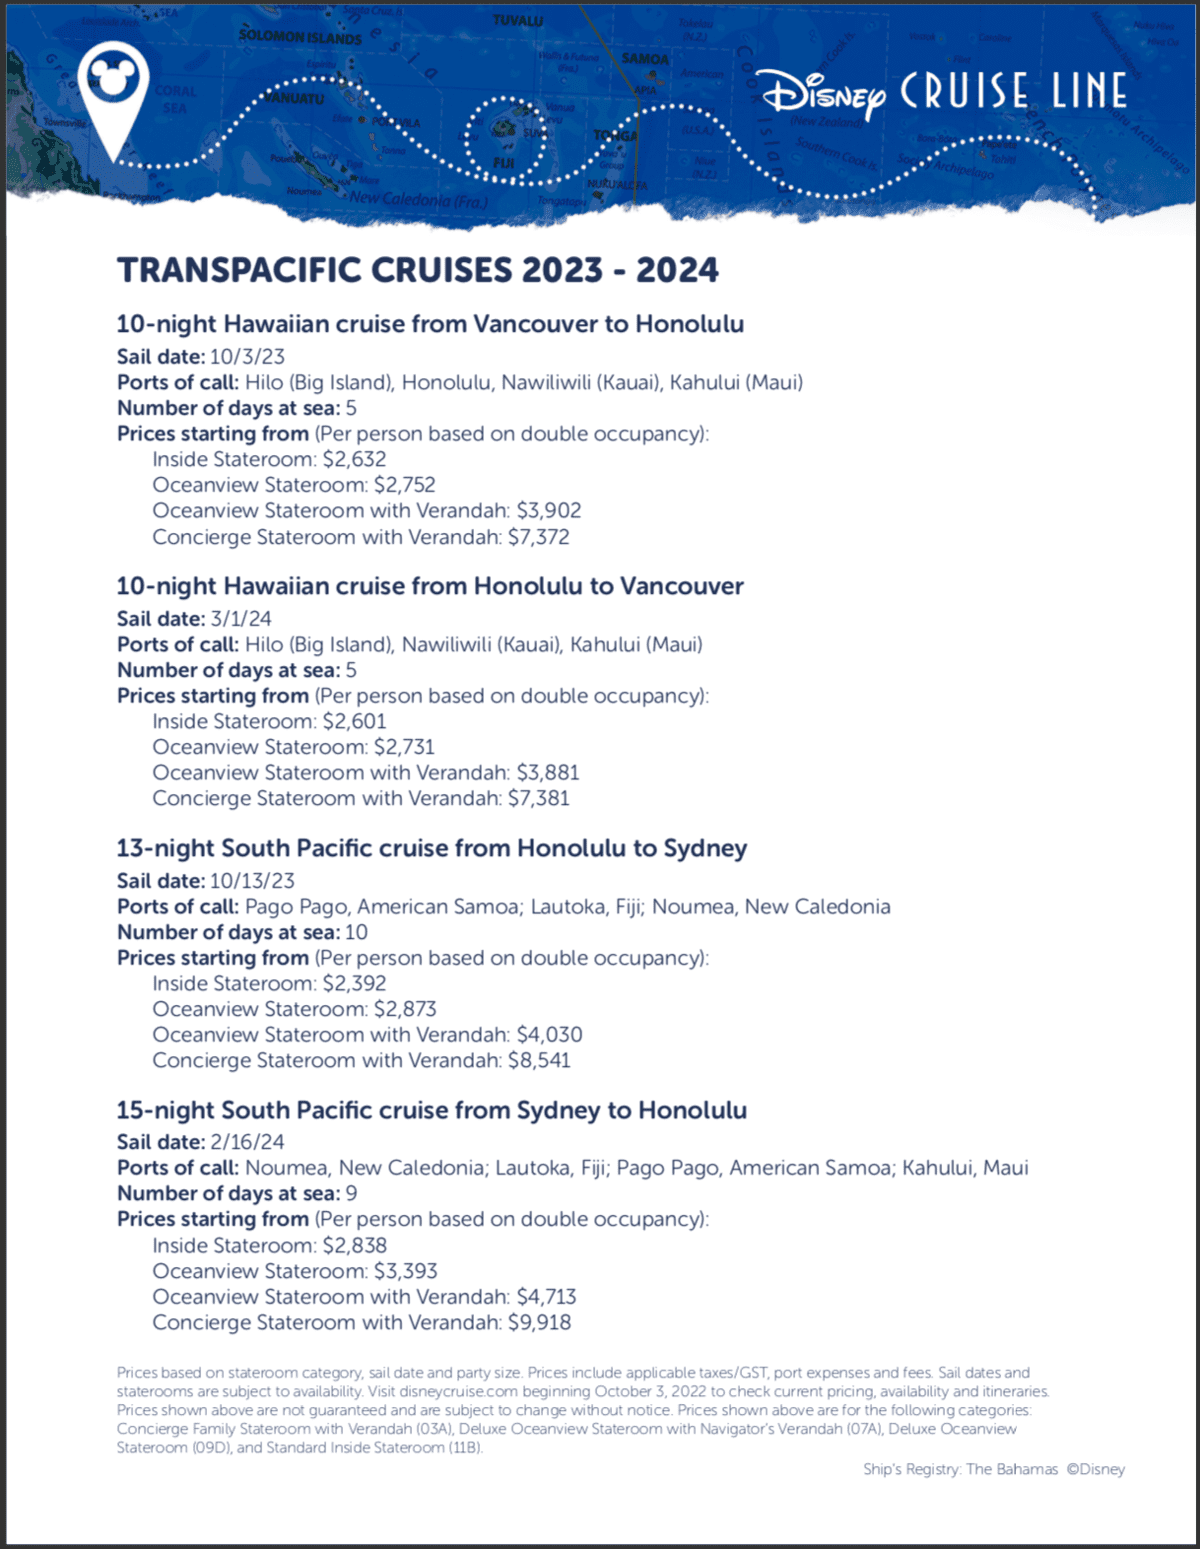 Disney Cruise Line Transpacific Cruises